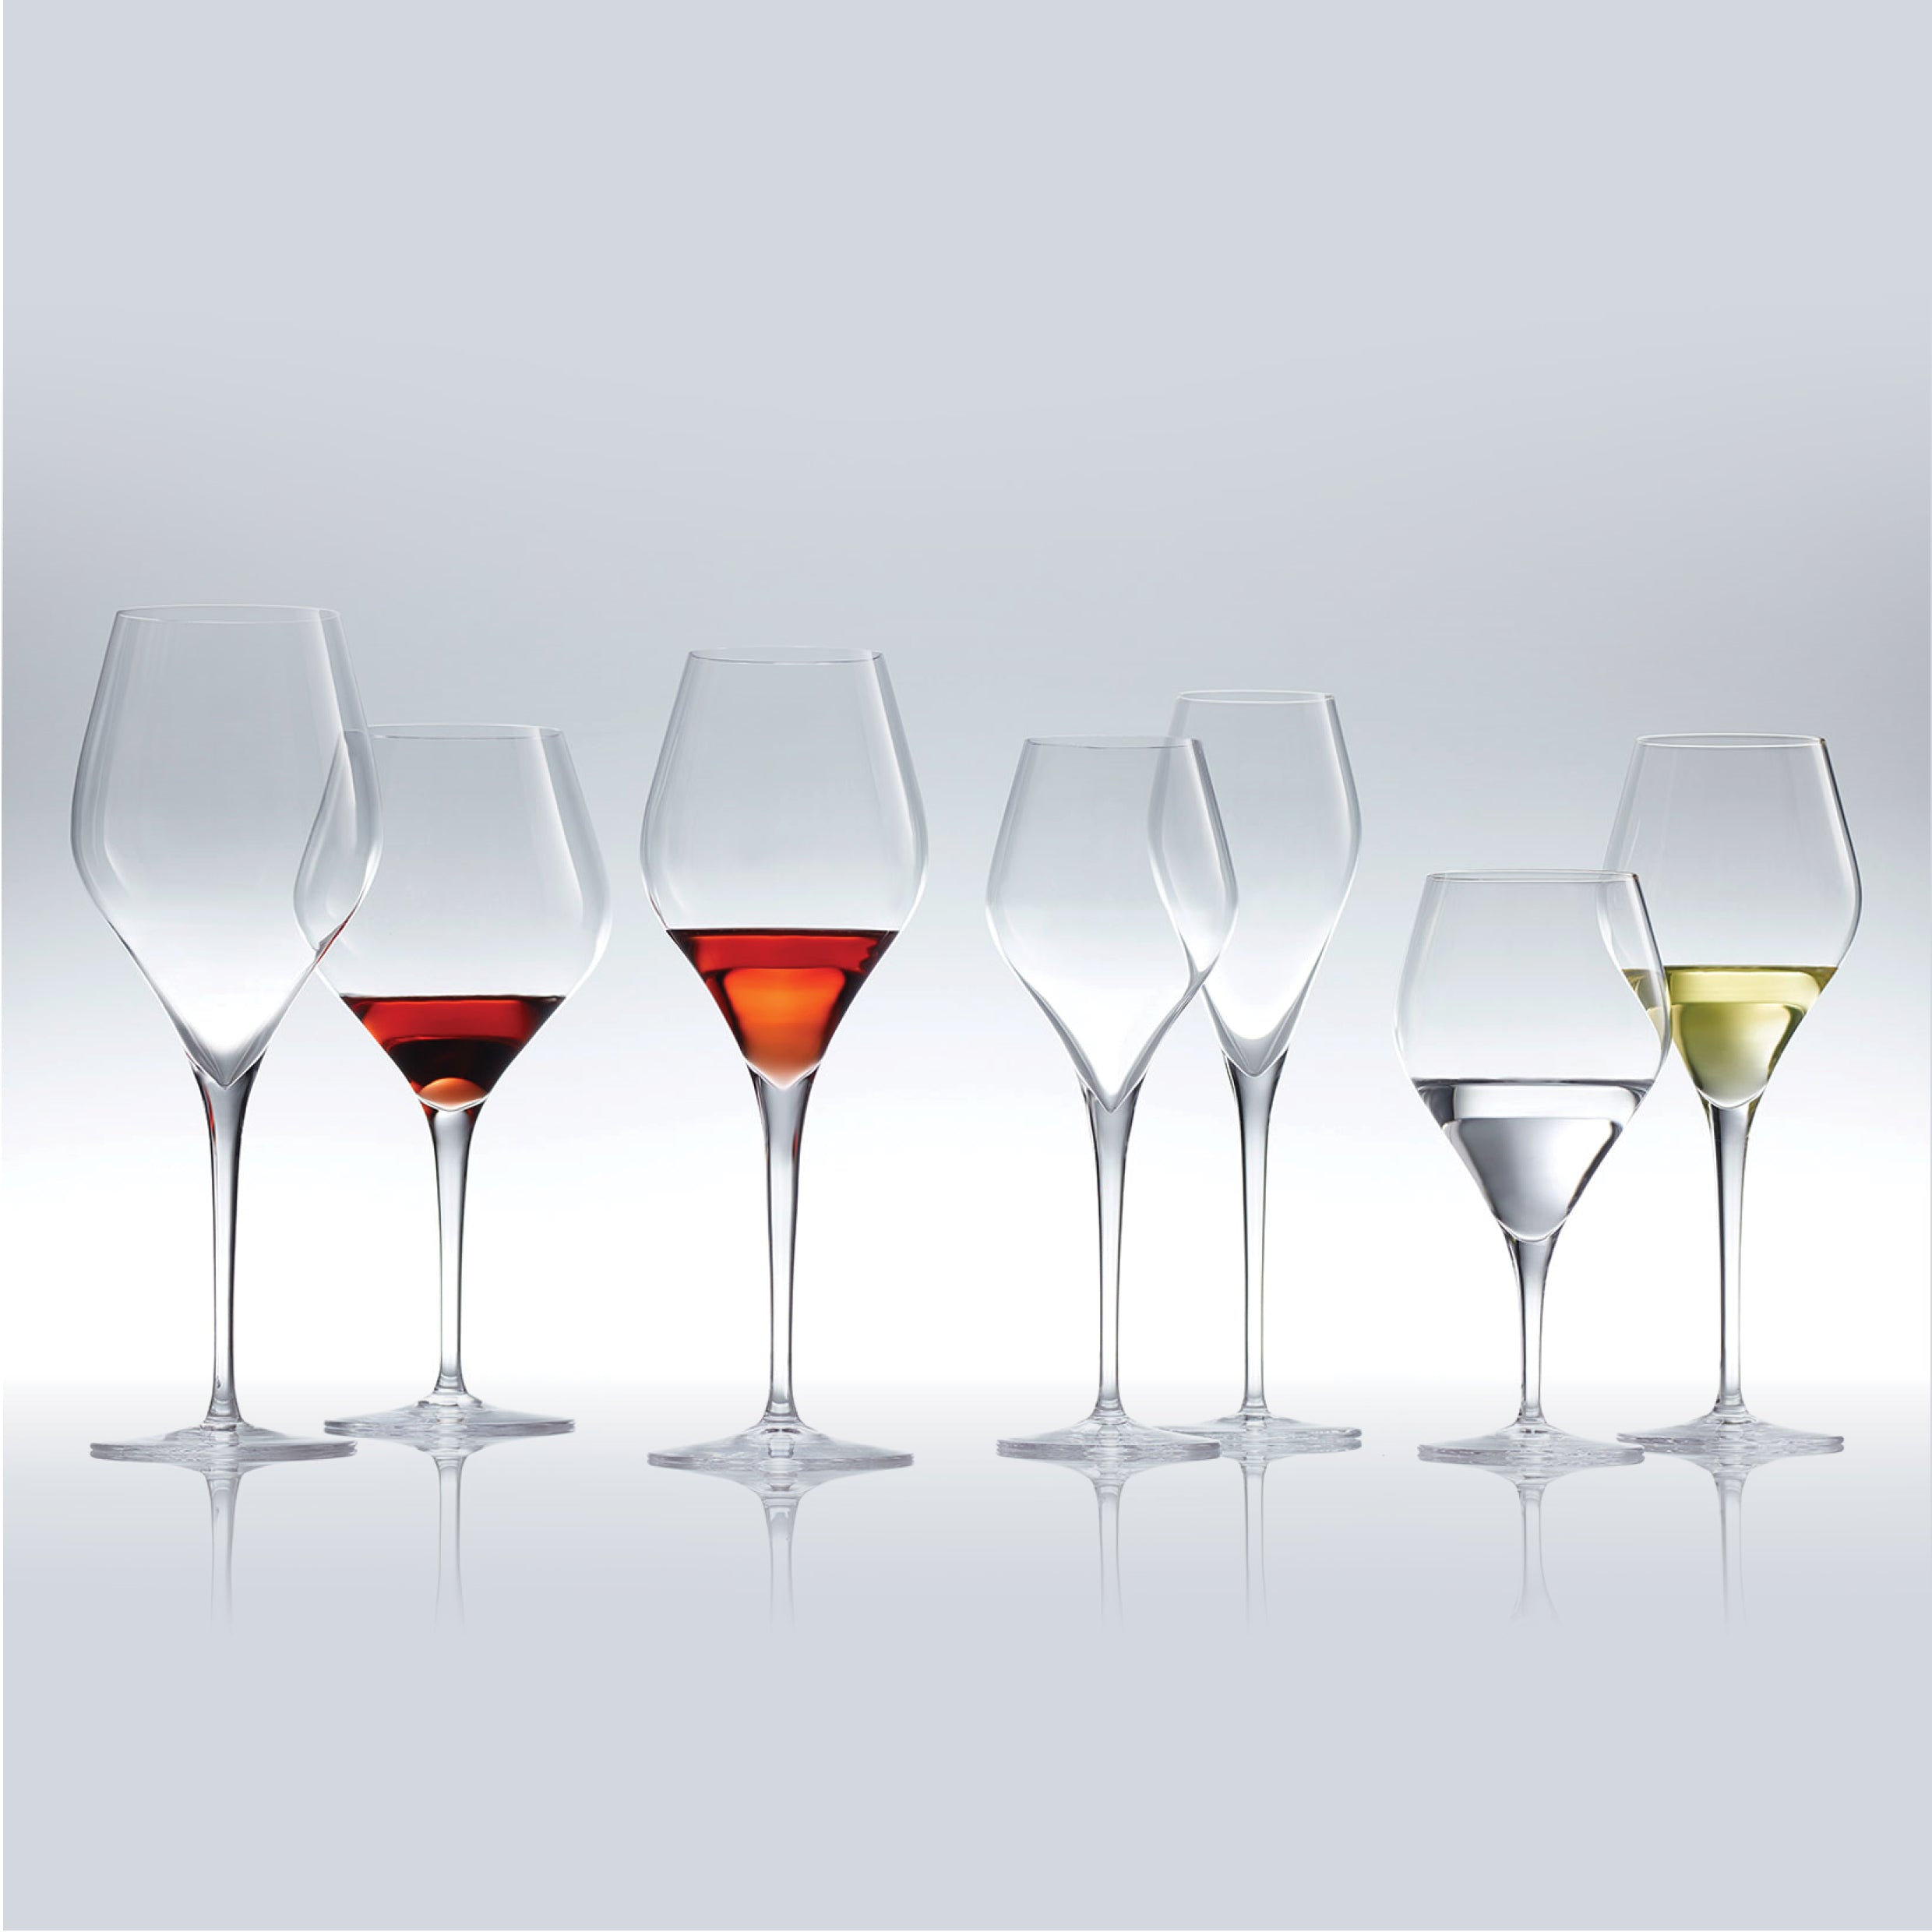 https://corsomerivale.nz/cdn/shop/products/Schott_Zwiesel_Finesse_Wine_Glass_Collection_Christchurch_NZ_316735da-bac9-40a2-b893-ca357ccbbebc.jpg?v=1578620791